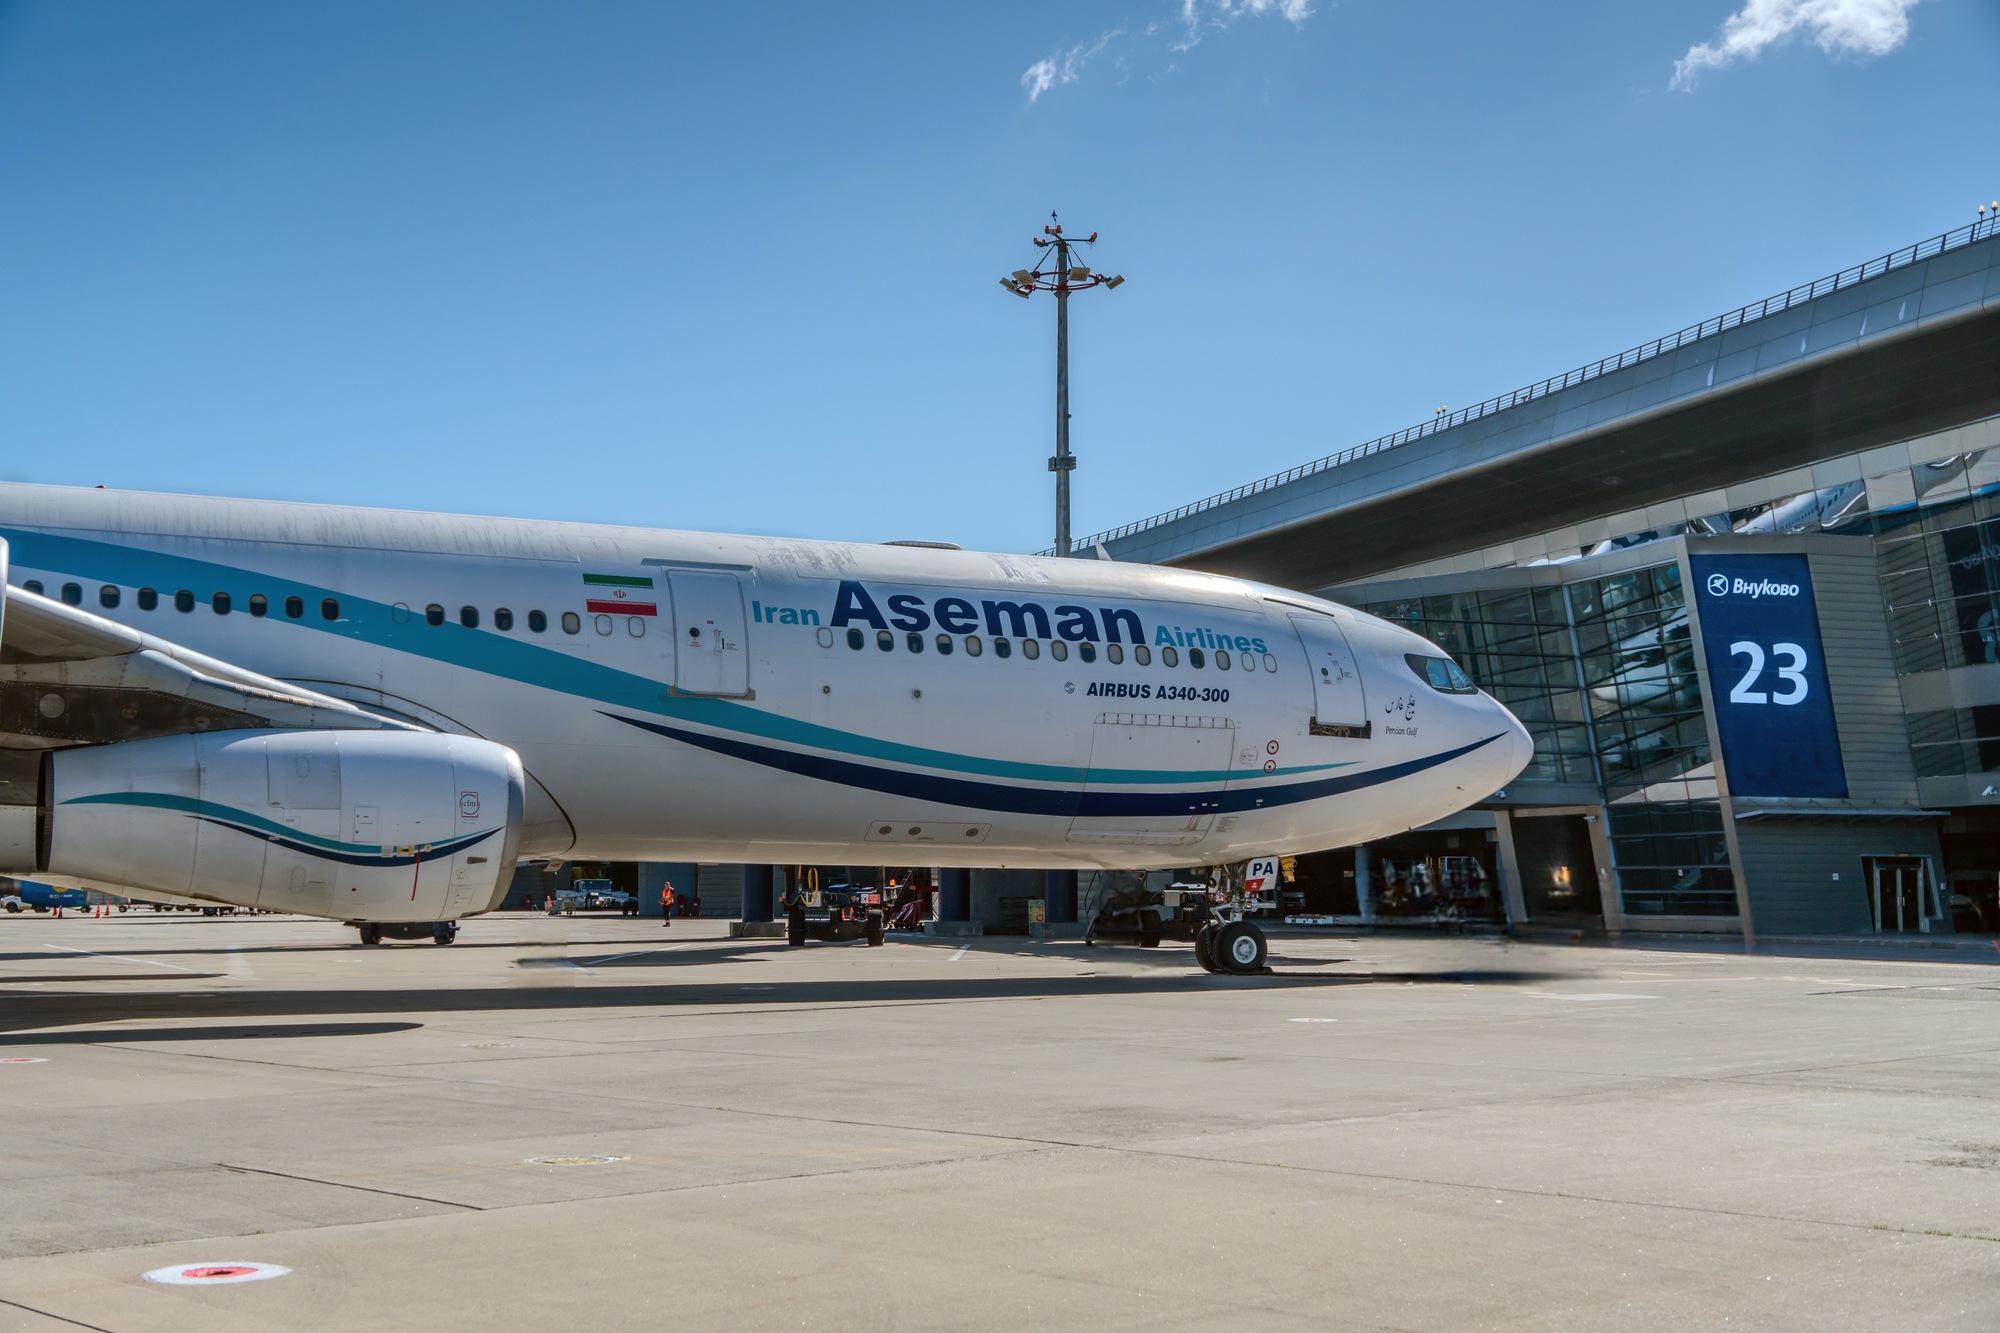 Авиакомпания Iran Aseman Airlines начала полетную программу из аэропорта Внуково